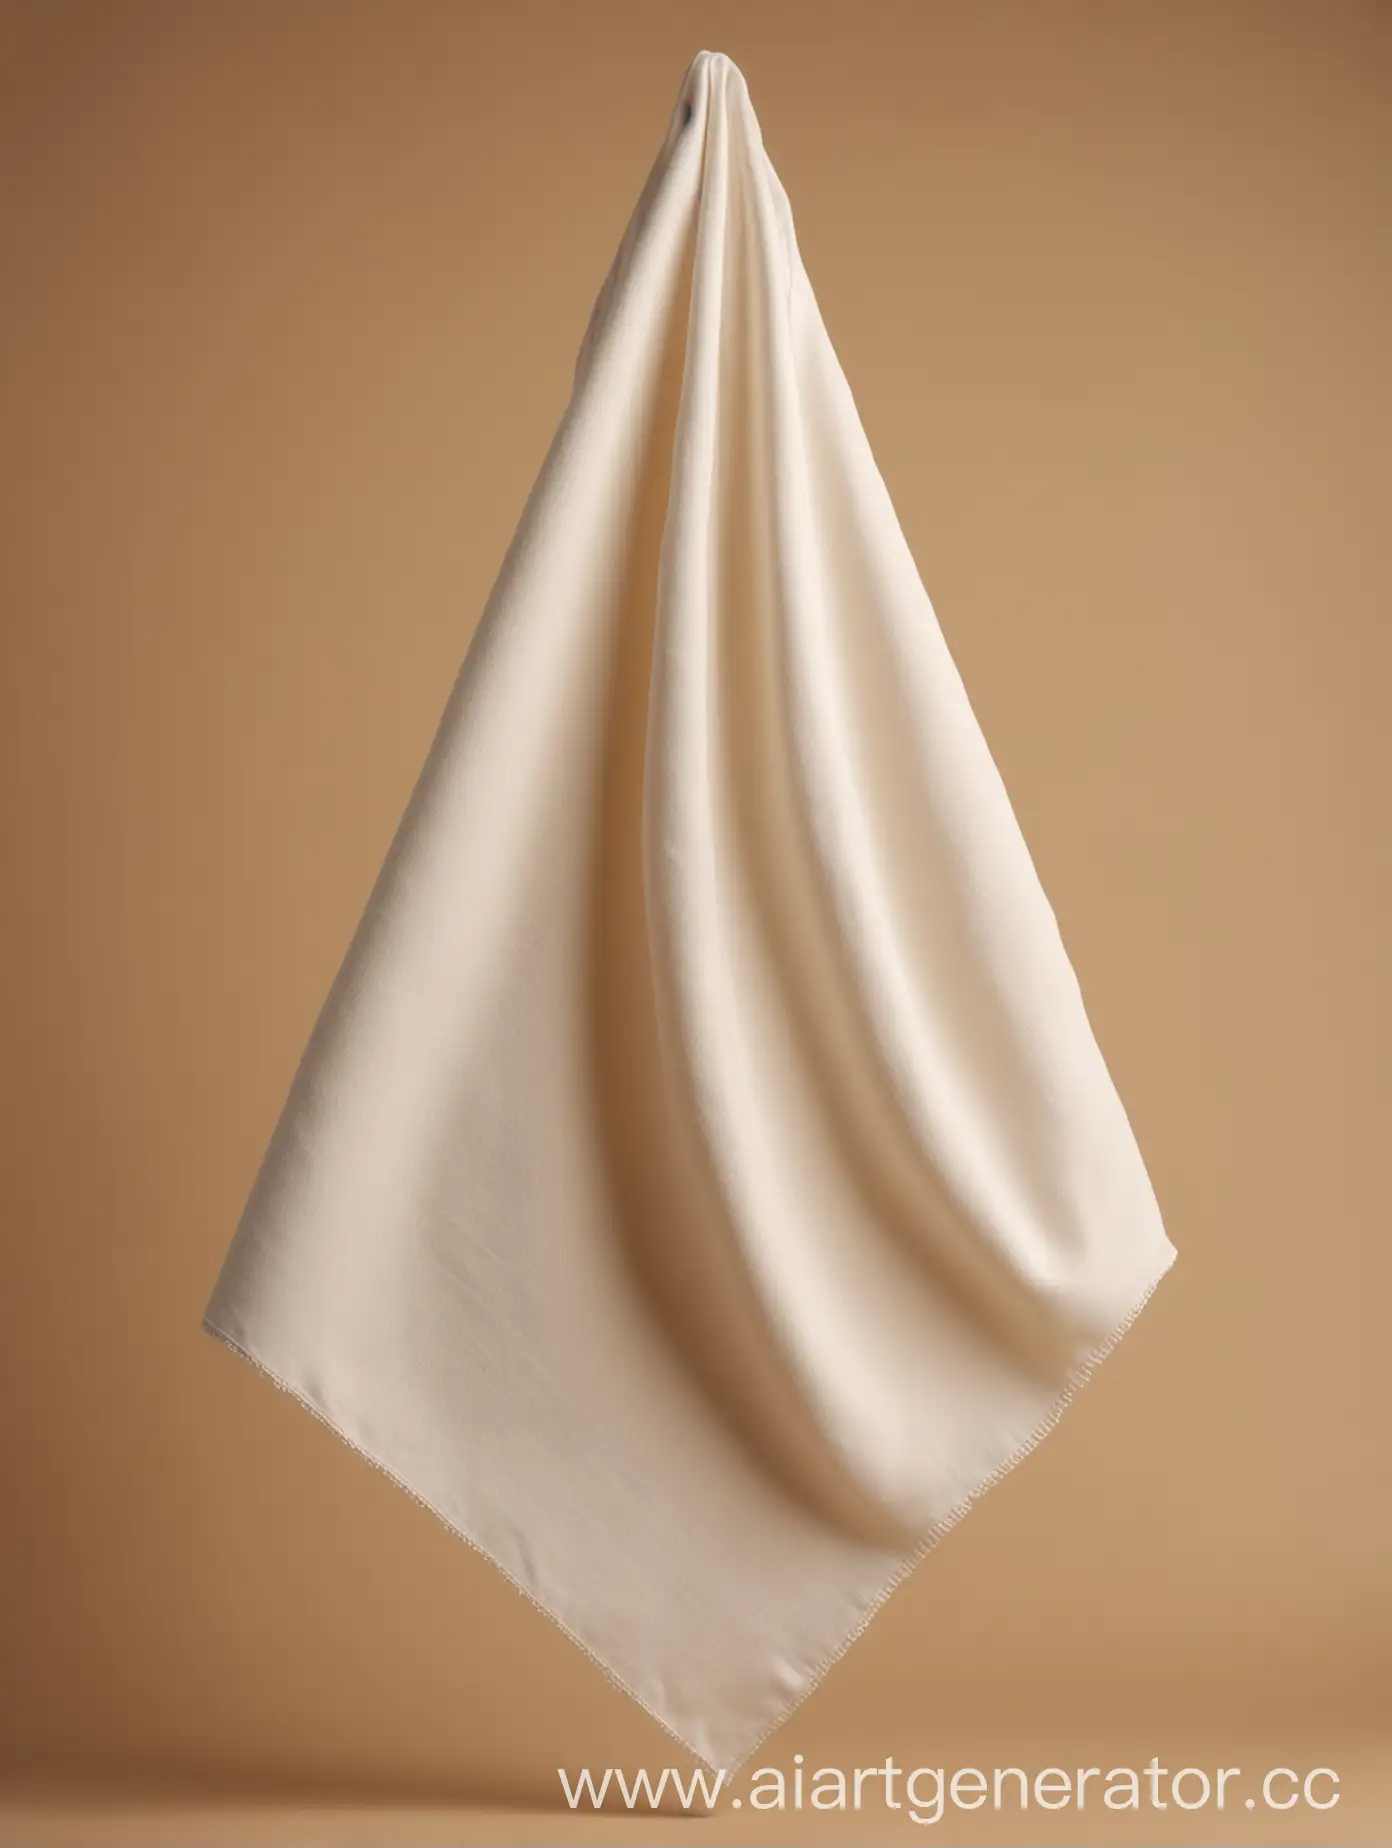 Мокап белого платка среднего размера. Пусть платок левитирует в воздухе и отбрасывает светлую тень. Фон бежевый